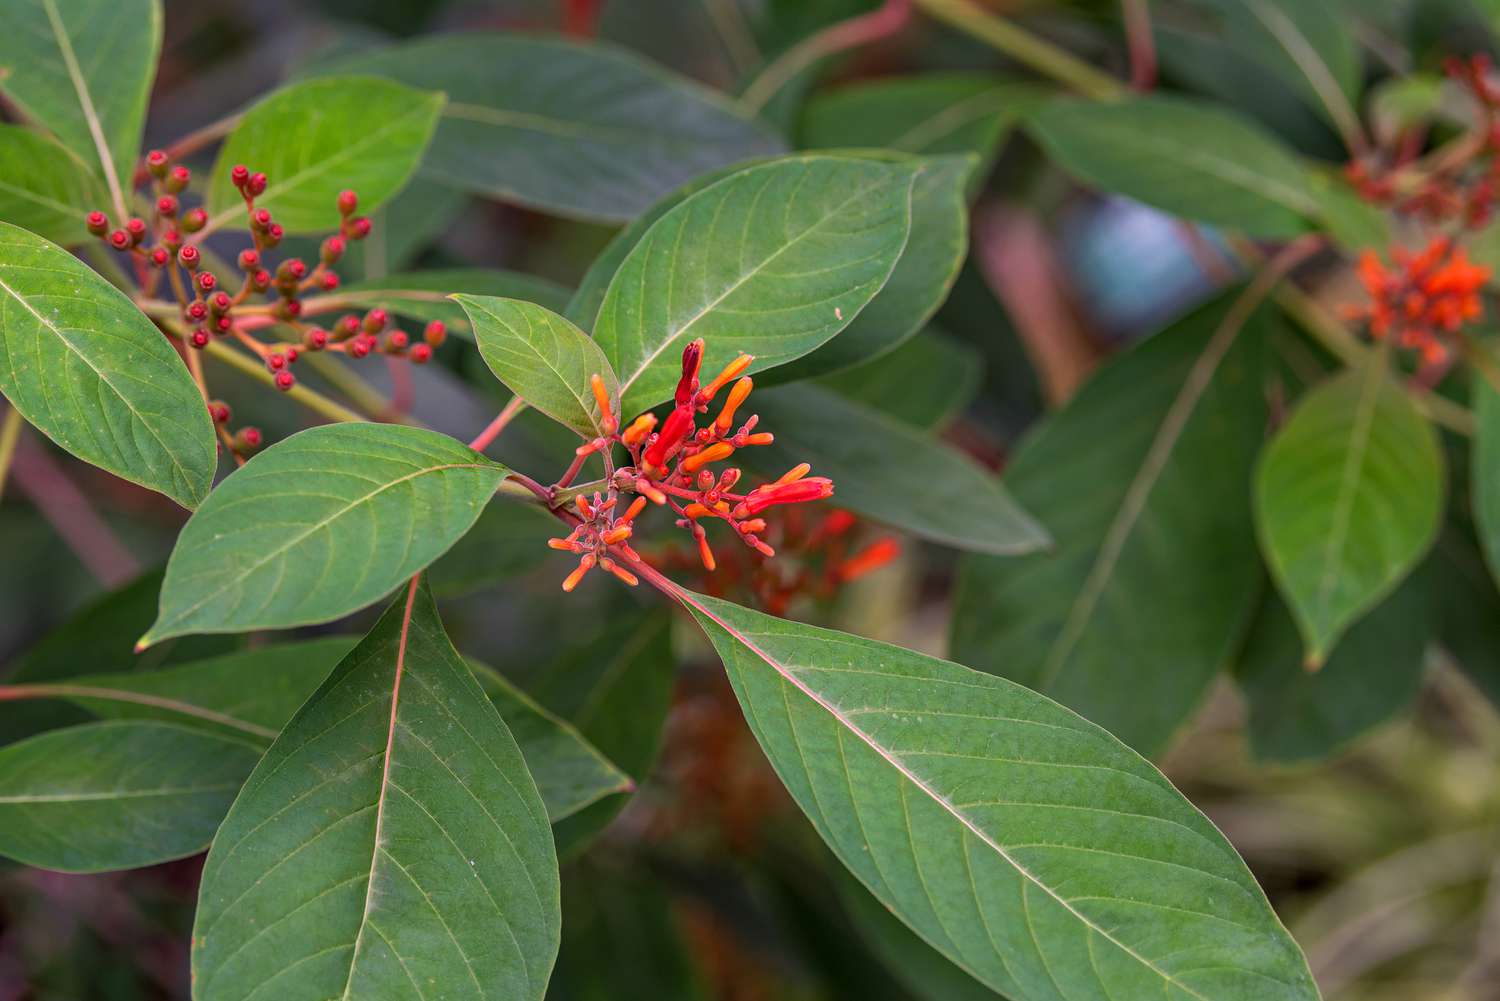 Arbusto Firebush rama con flores tubulares de color rojo anaranjado rodeadas de grandes hojas verdes